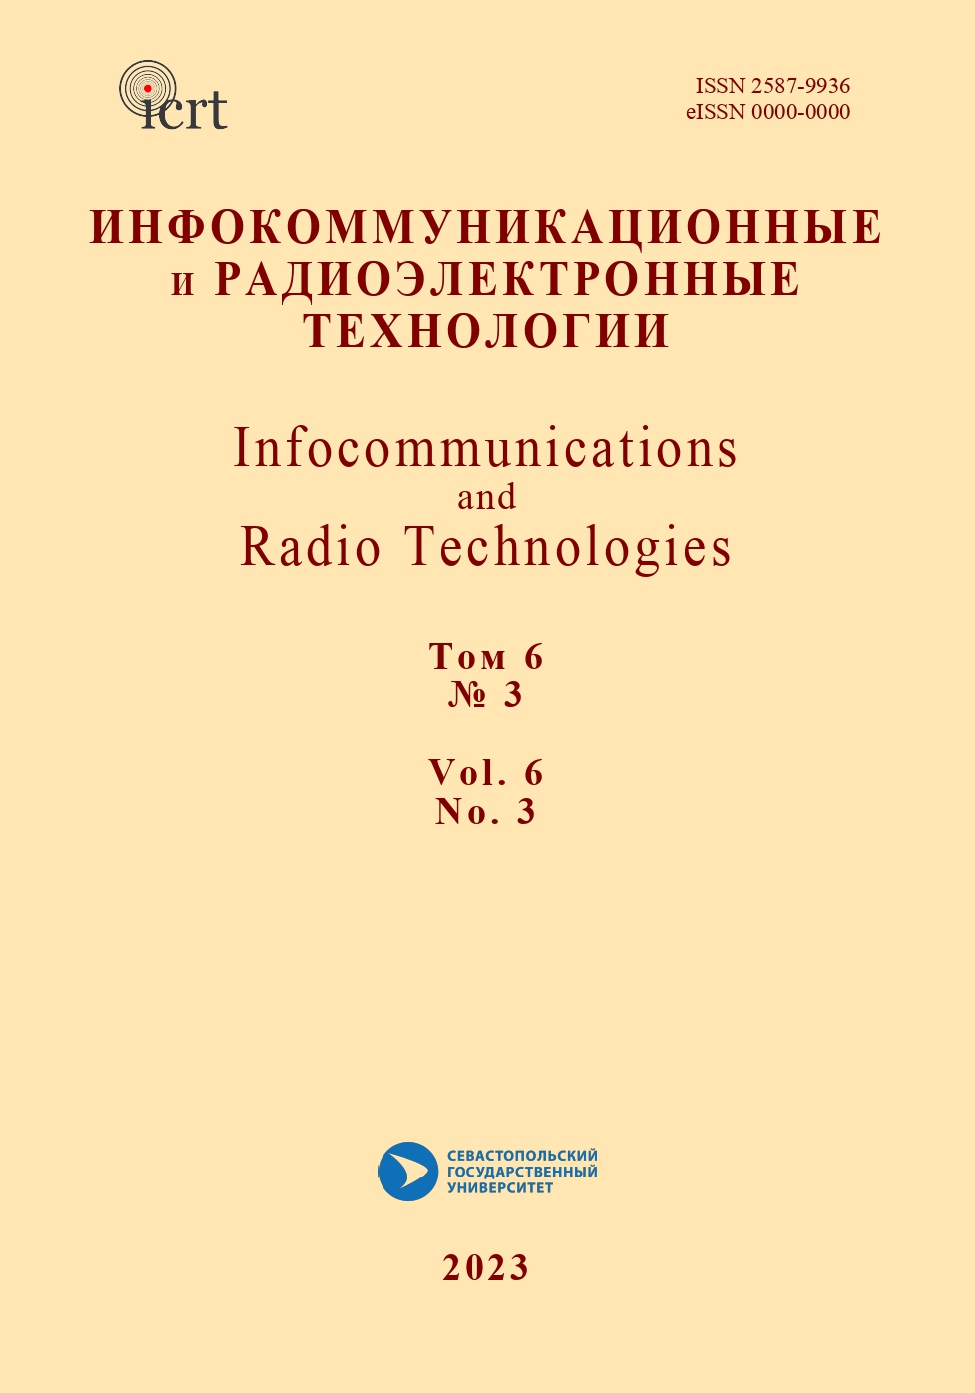             Проект IEEE oral history: академик Ю. В. Гуляев. Часть 5
    